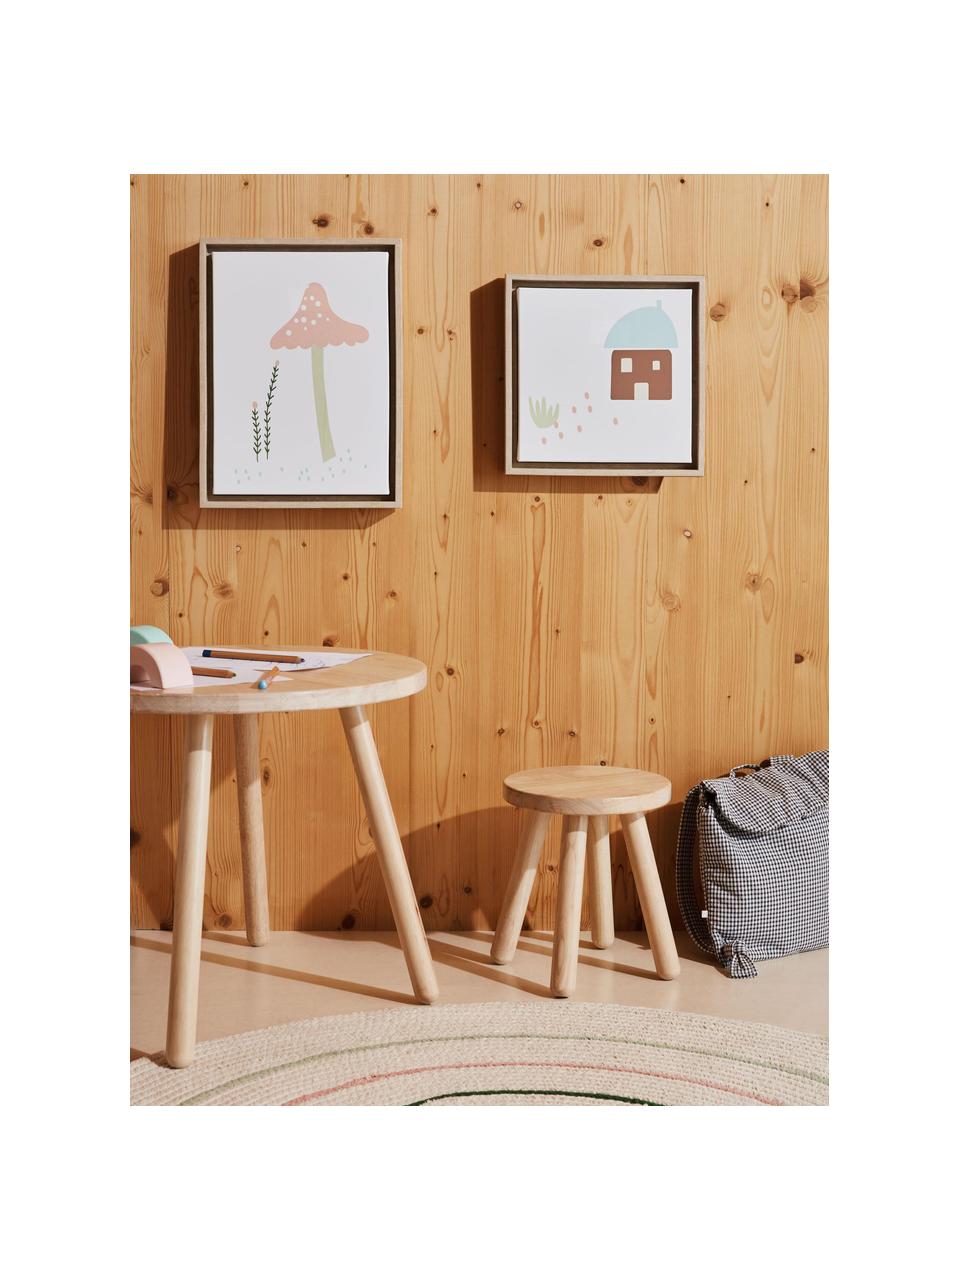 Stołek dla dzieci z drewna kauczukowego Dilcia, Drewno kauczukowe, Drewno kauczukowe, Ø 24 x W 31 cm